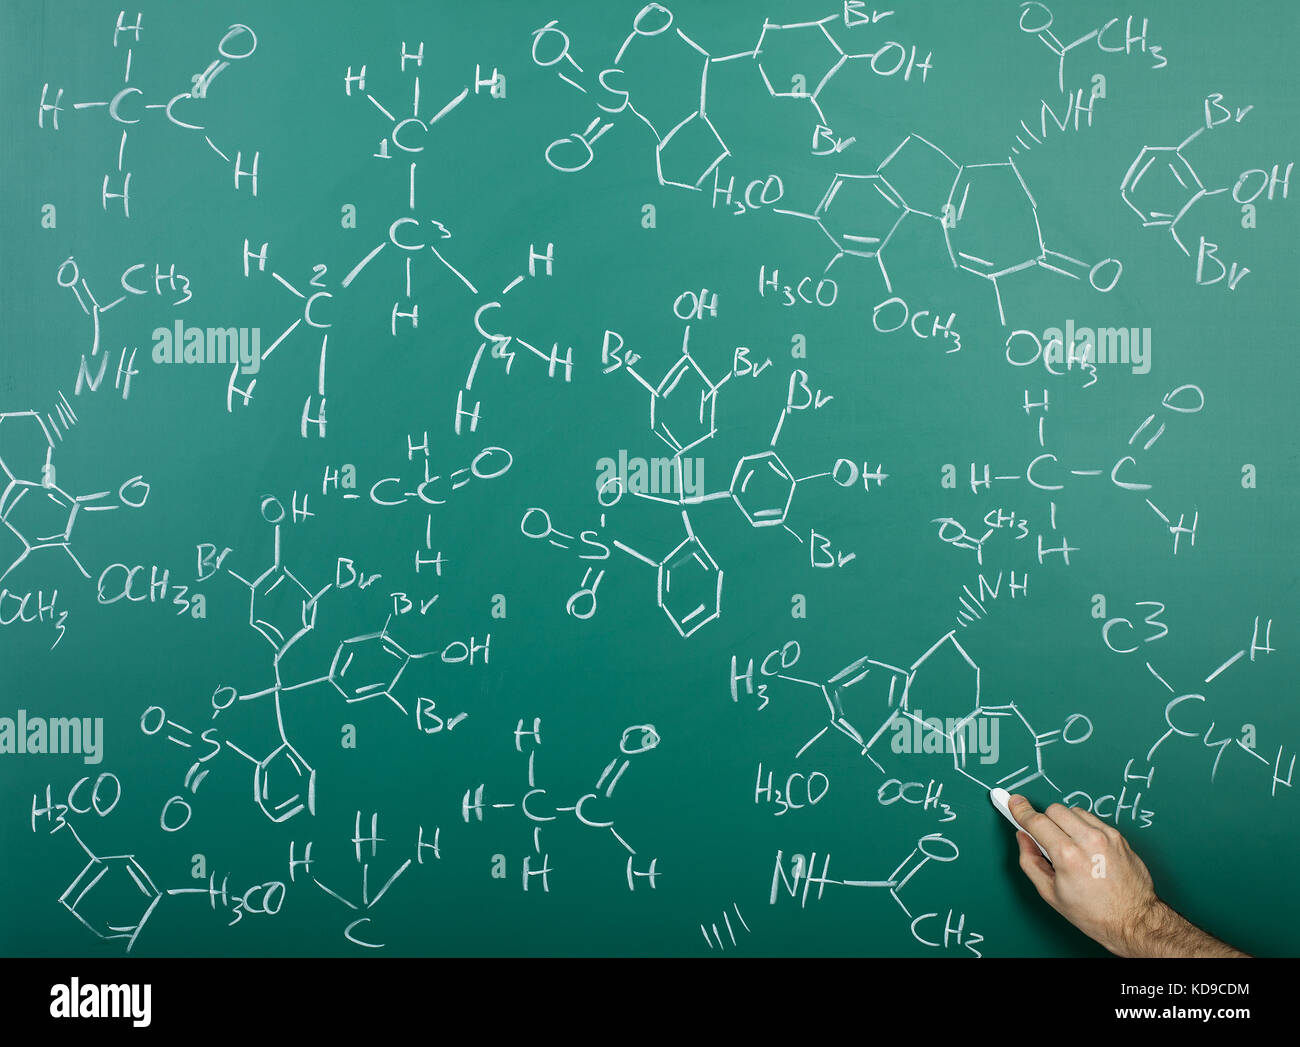 Organisch-chemische Formeln auf einer grünen Tafel Stockfoto